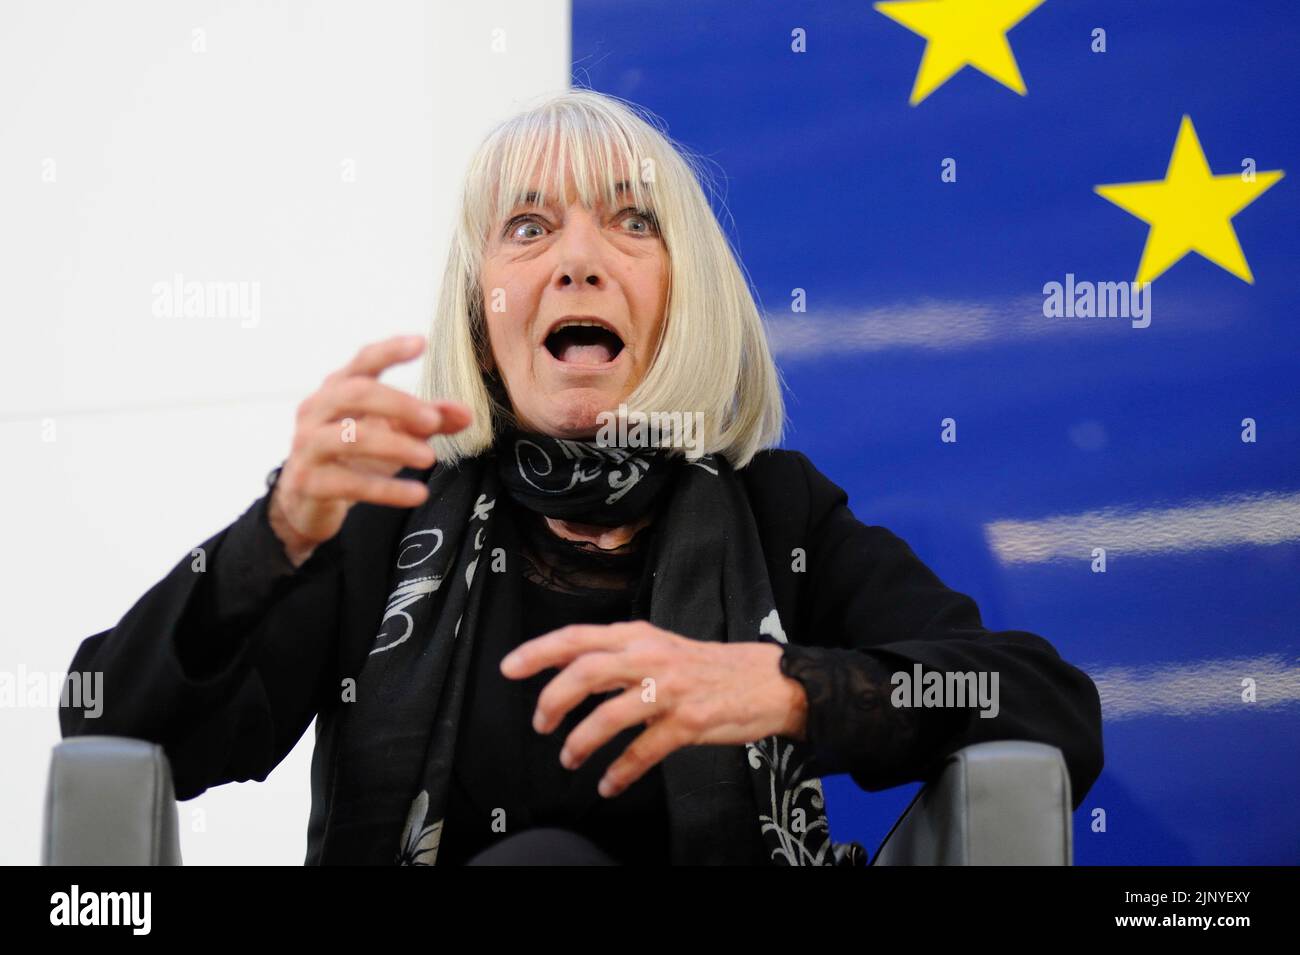 Vienna, Austria. April 14, 2015. The Austrian actress Erika Pluhar in the House of the European Union Stock Photo